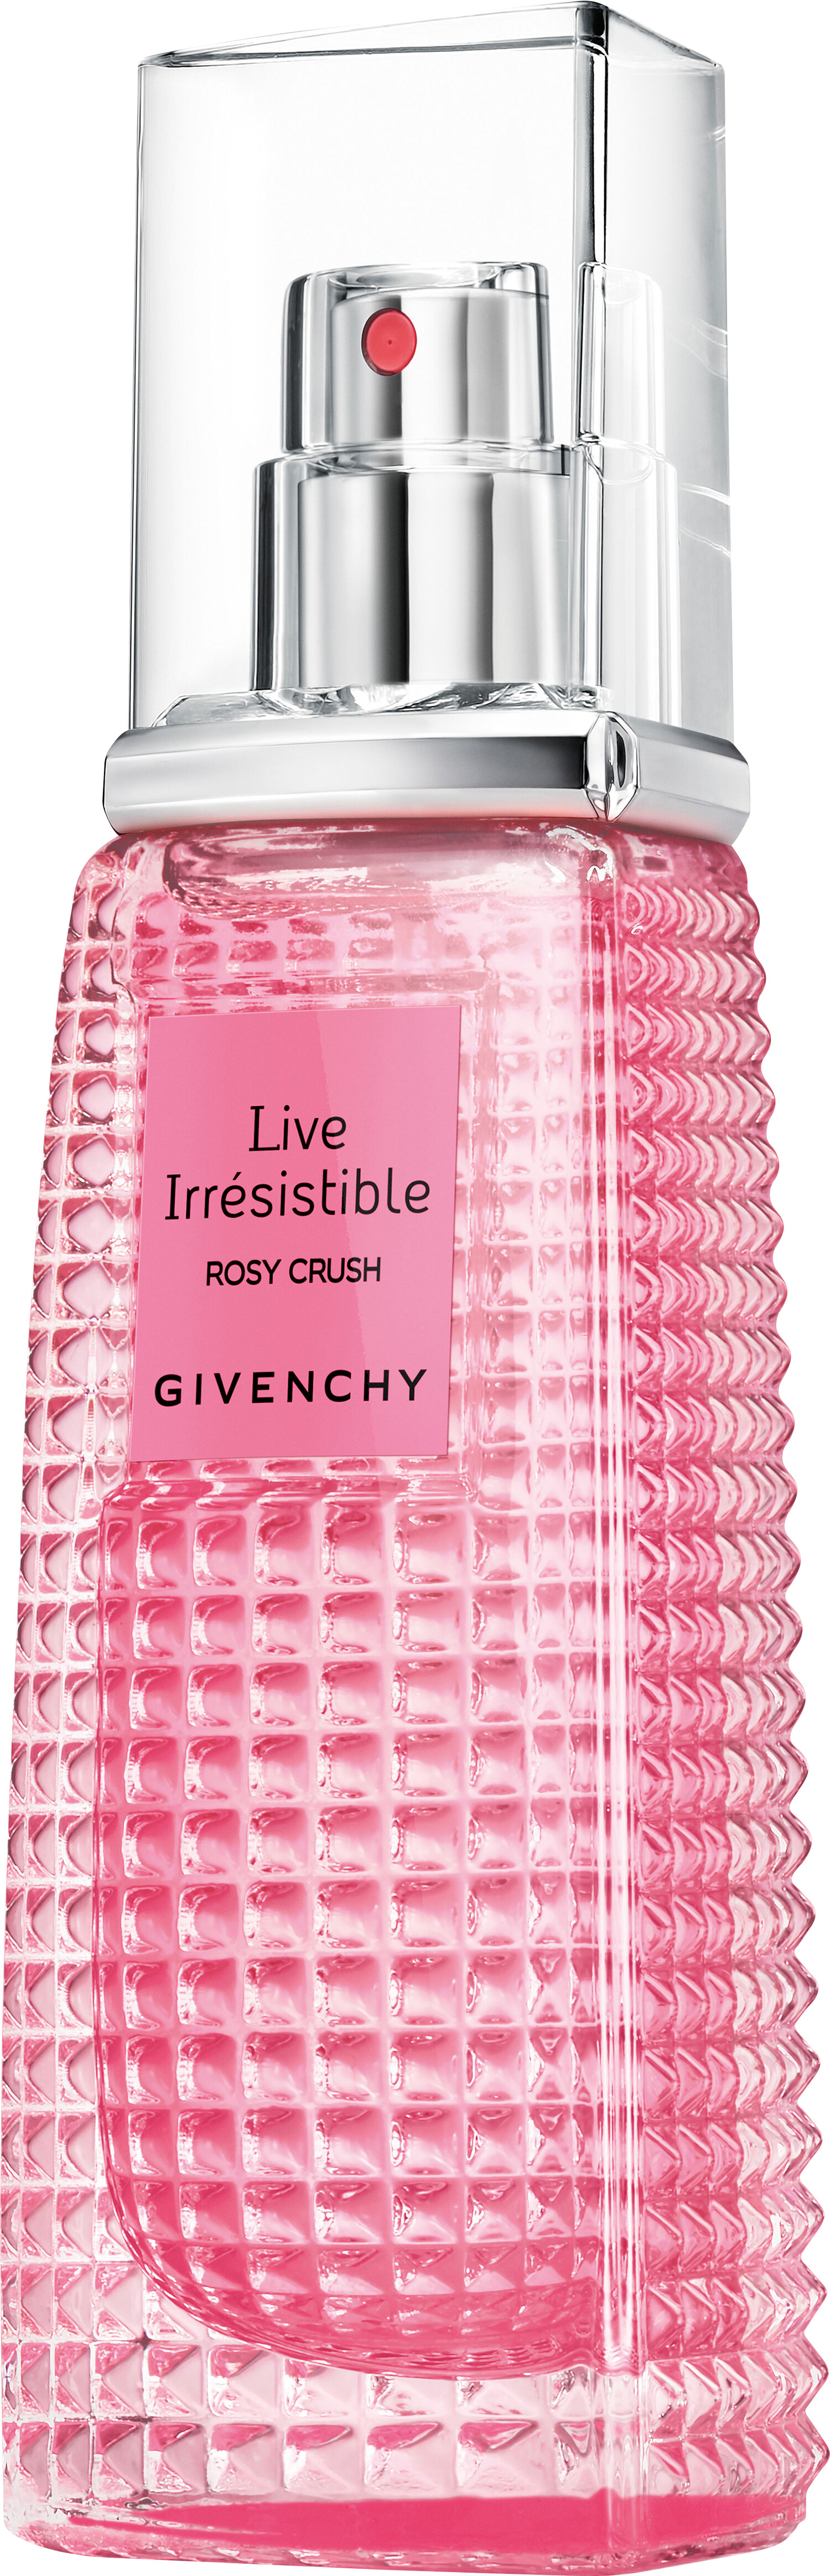 rosy crush perfume